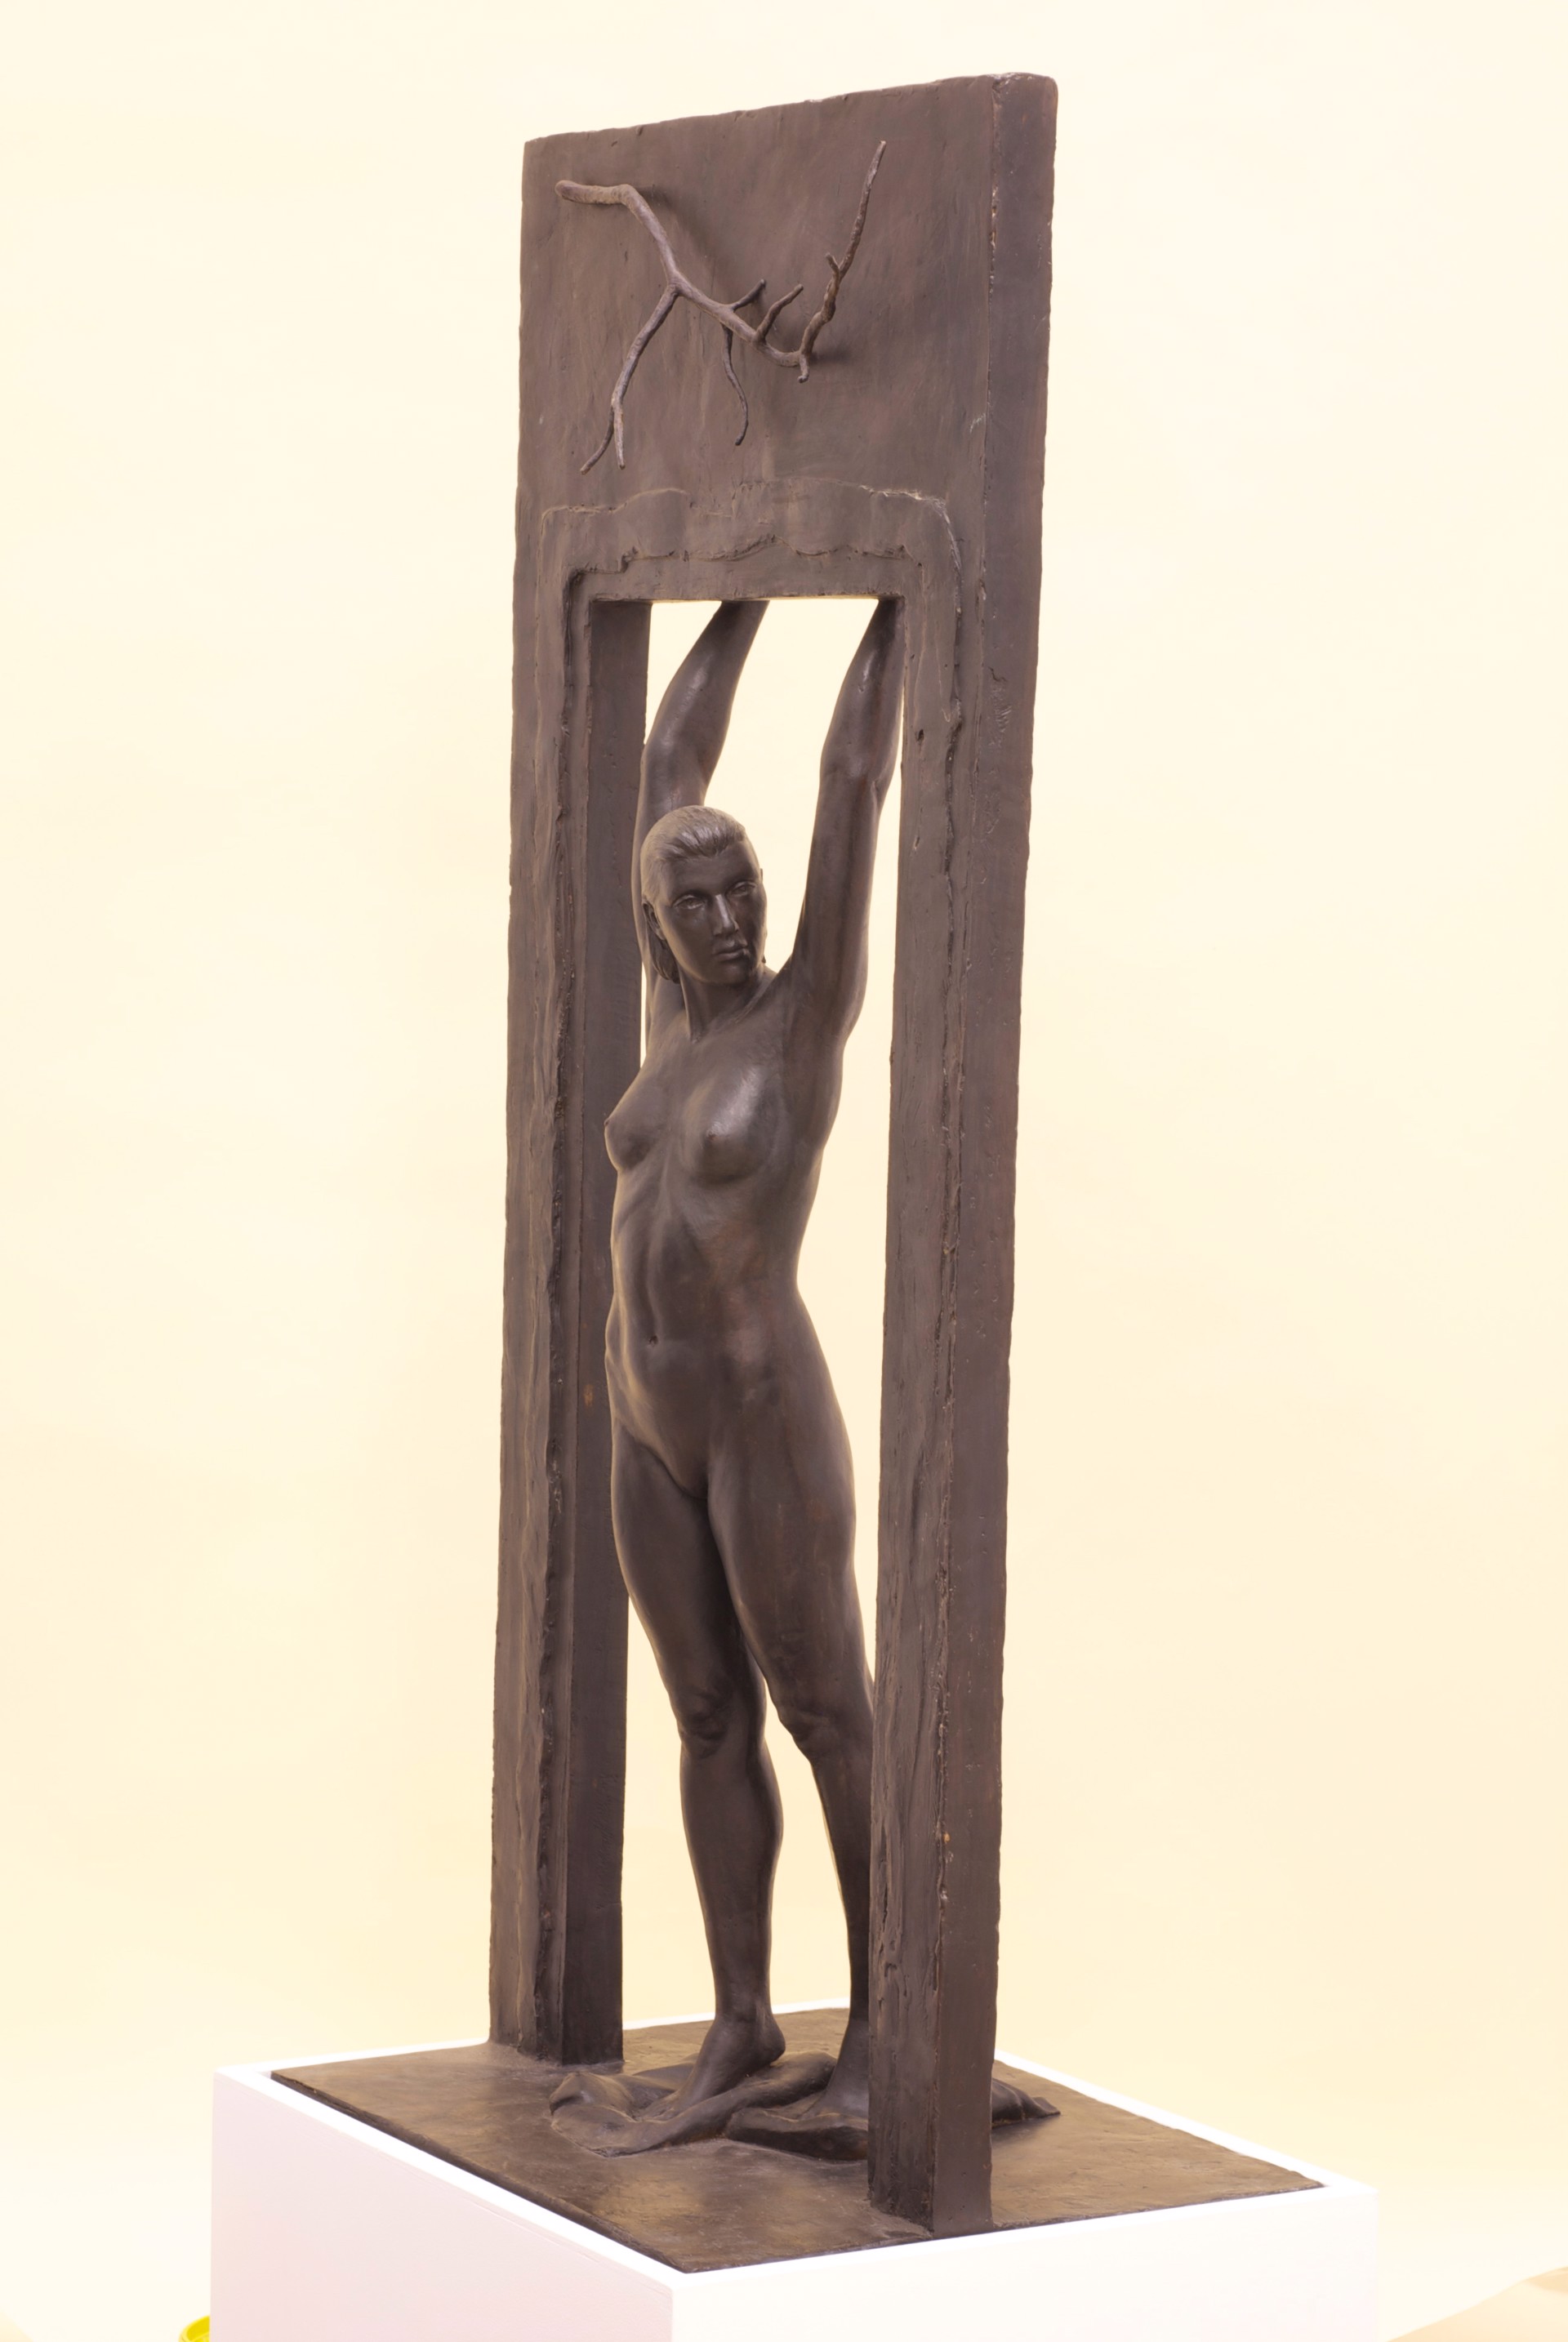 Hanging Woman by Louis Marinaro